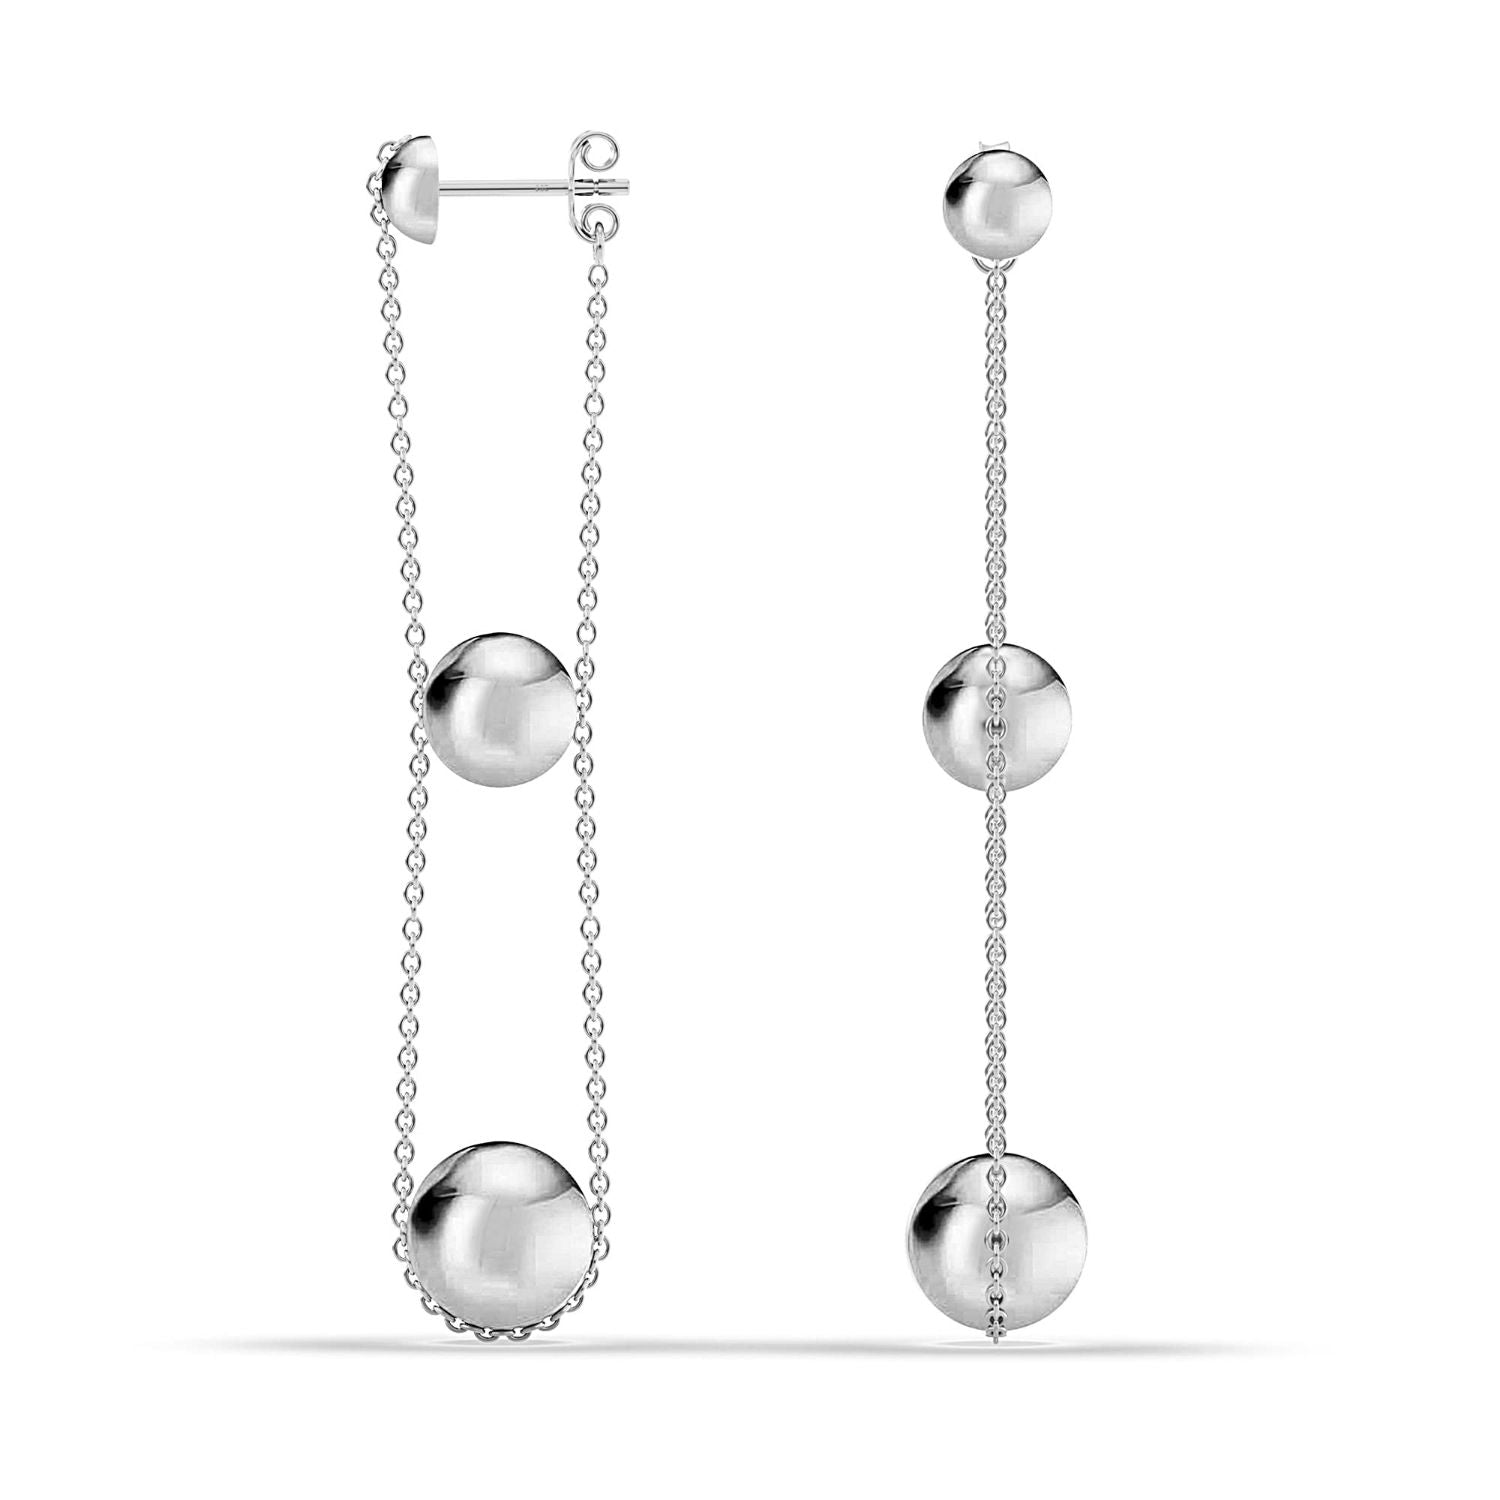 925 Sterling Silver Ball Triple Beaded Drop Dangle Earrings for Women